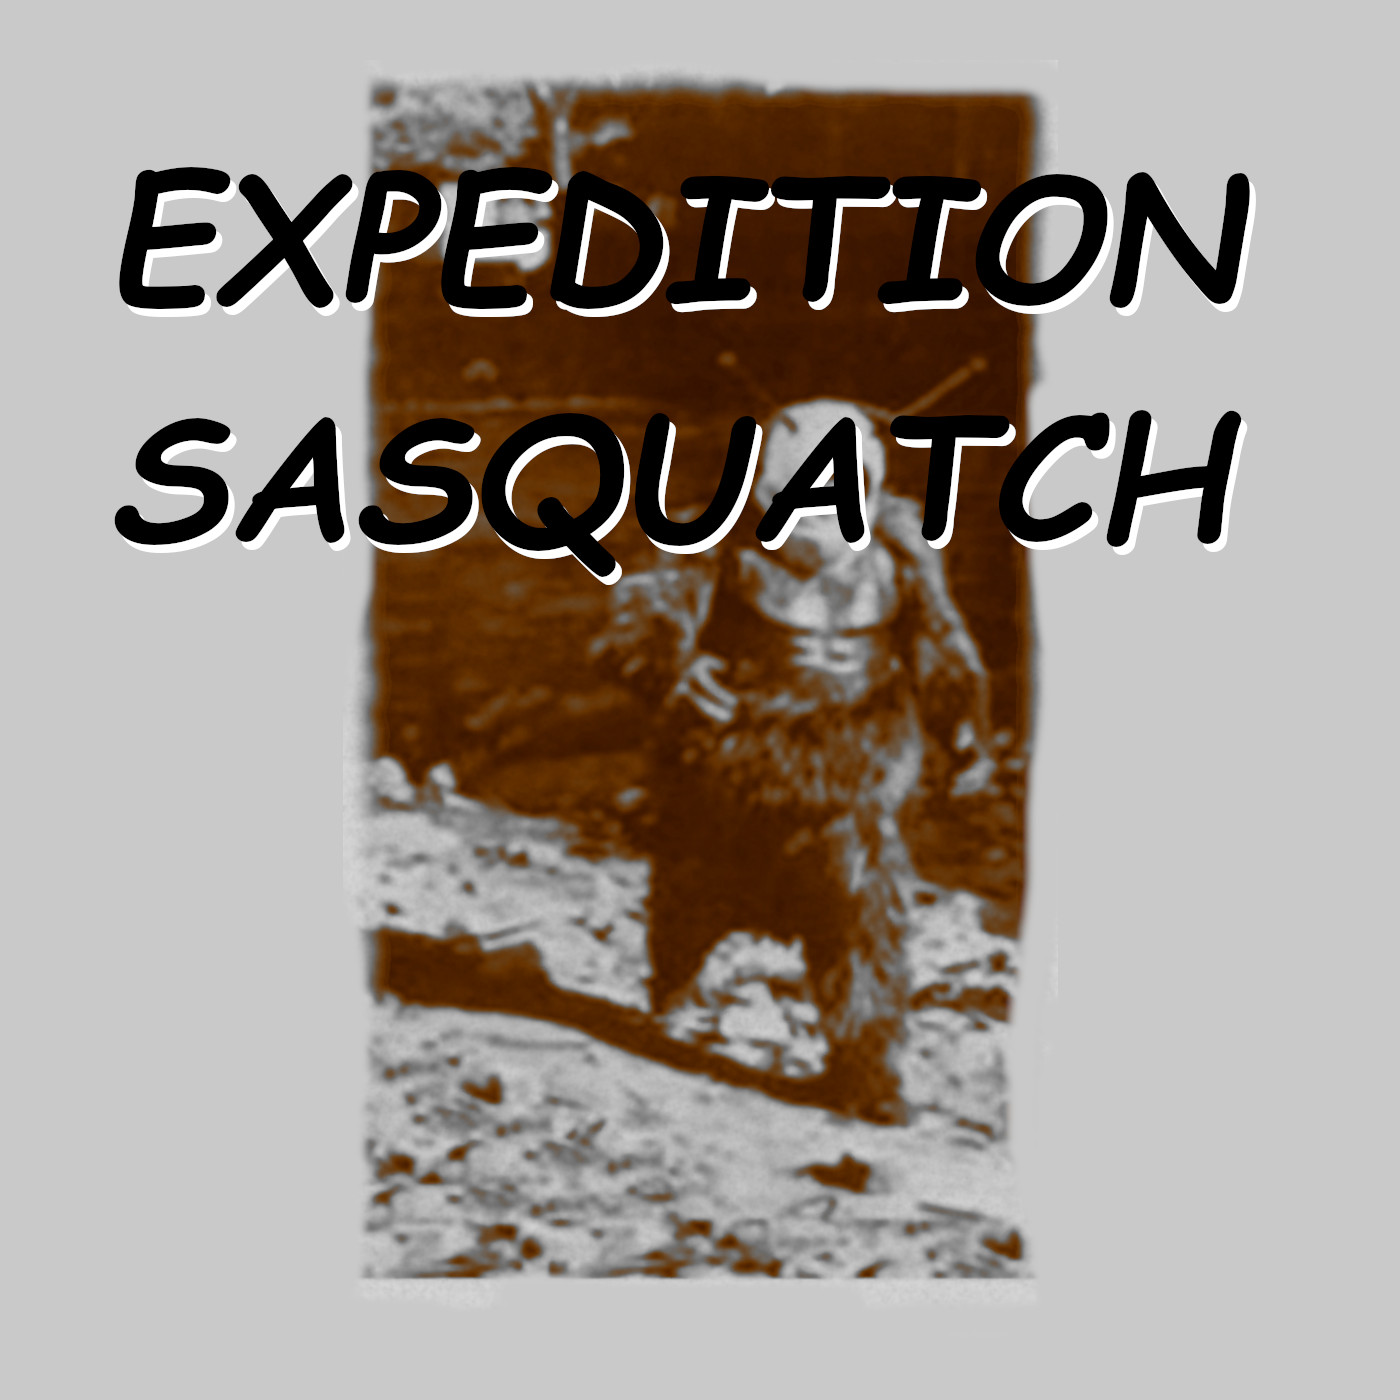 Episode 11 - Mr. Squatch Goes To Washington